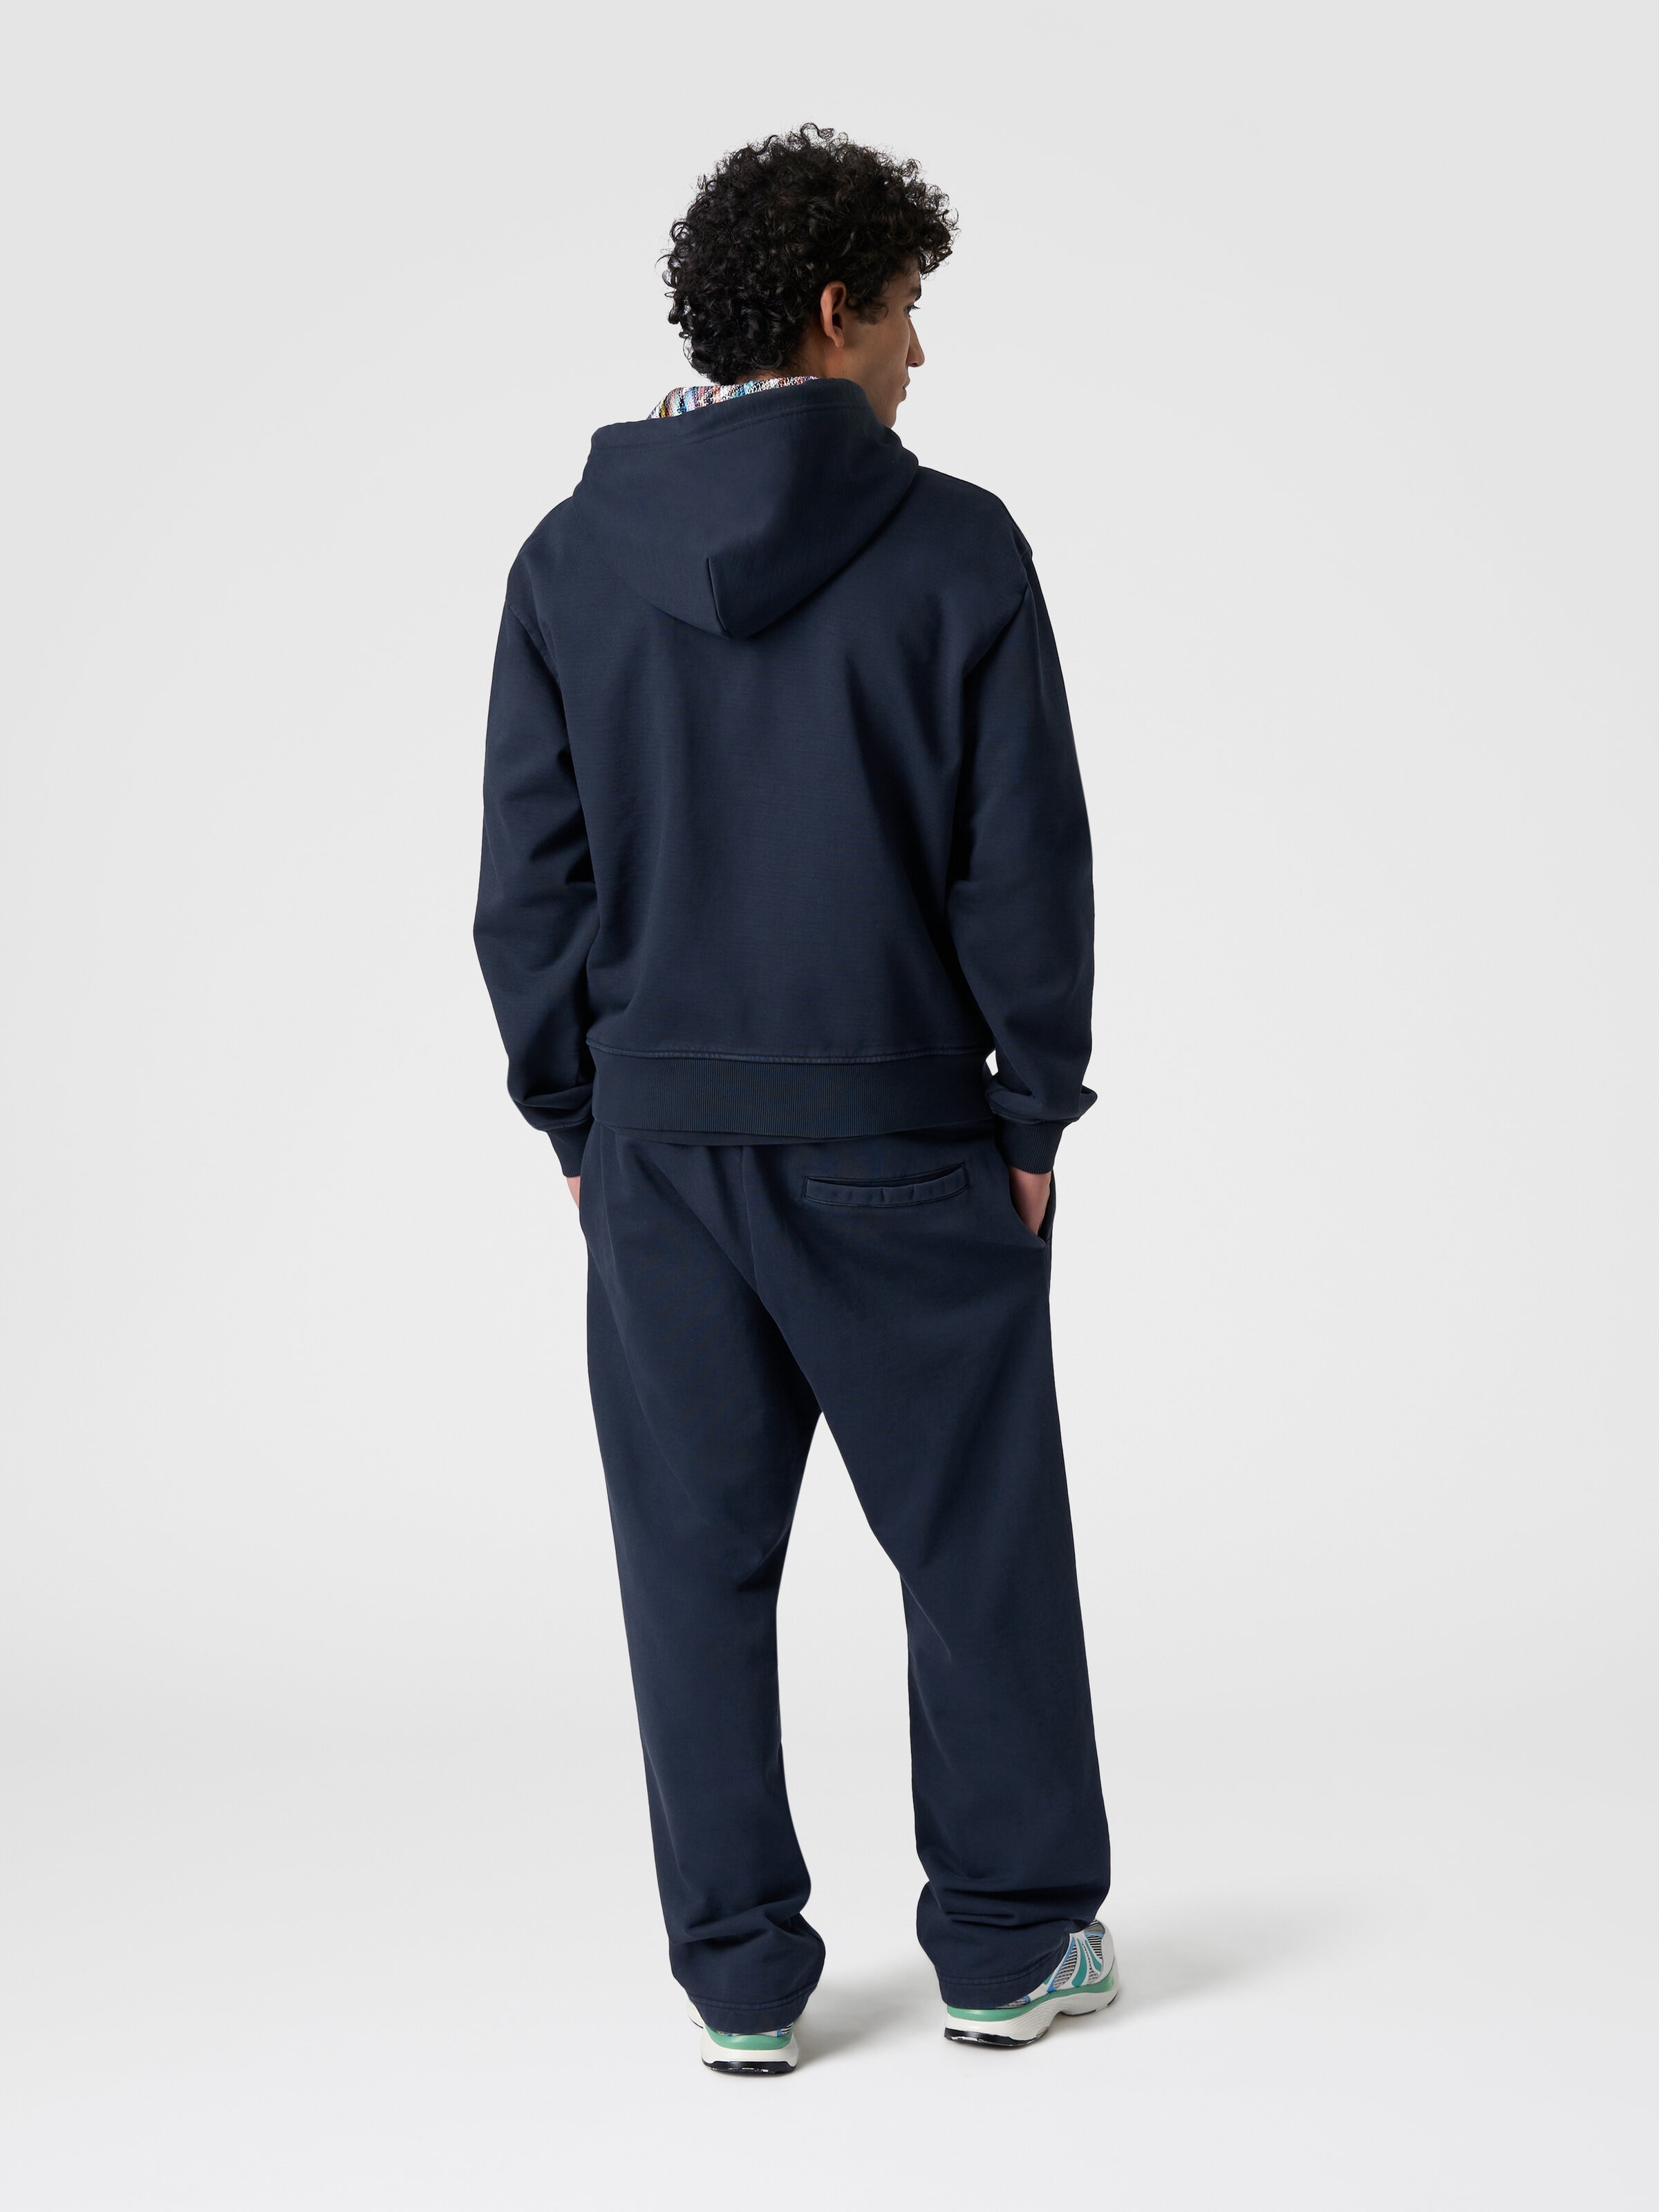 Cardigan in felpa di cotone con cappuccio foderato in maglia, Blu Navy  - 2